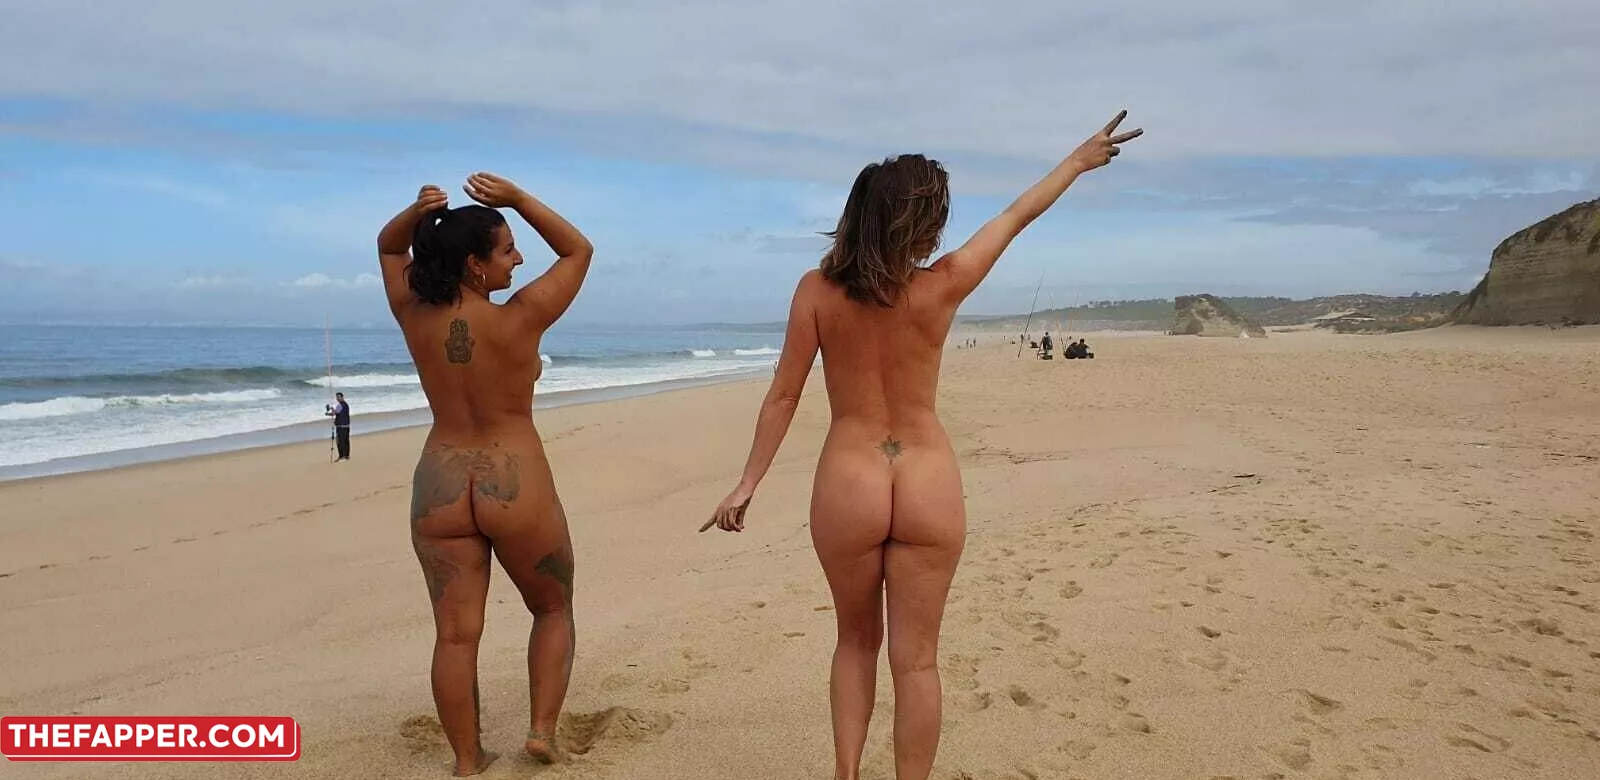 Carinamoreschi  Onlyfans Leaked Nude Image #QjztiKD4BV